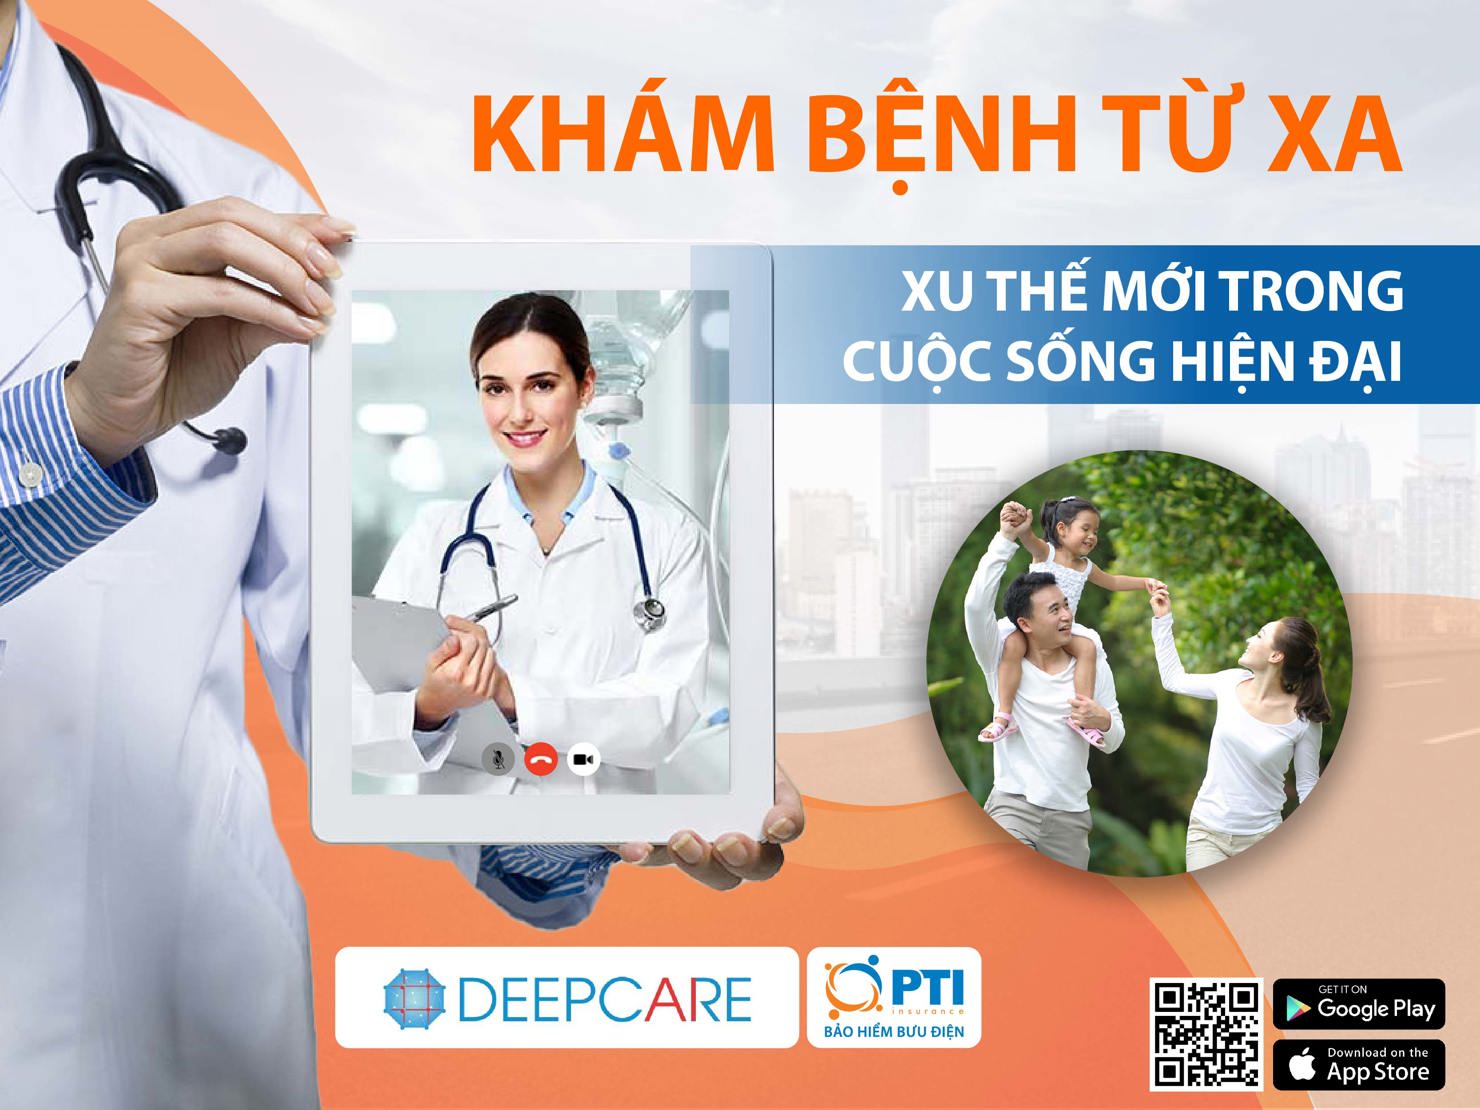 Từ ngày 11/4 - 17/4/2020, PTI đã phối hợp với start up Deepcare Việt Nam triển khai tuần lễ tư vấn, thăm khám trực tuyến được kết nối trực tiếp với các bác sỹ chuyên khoa đầu ngành tại các bệnh viện lớn.